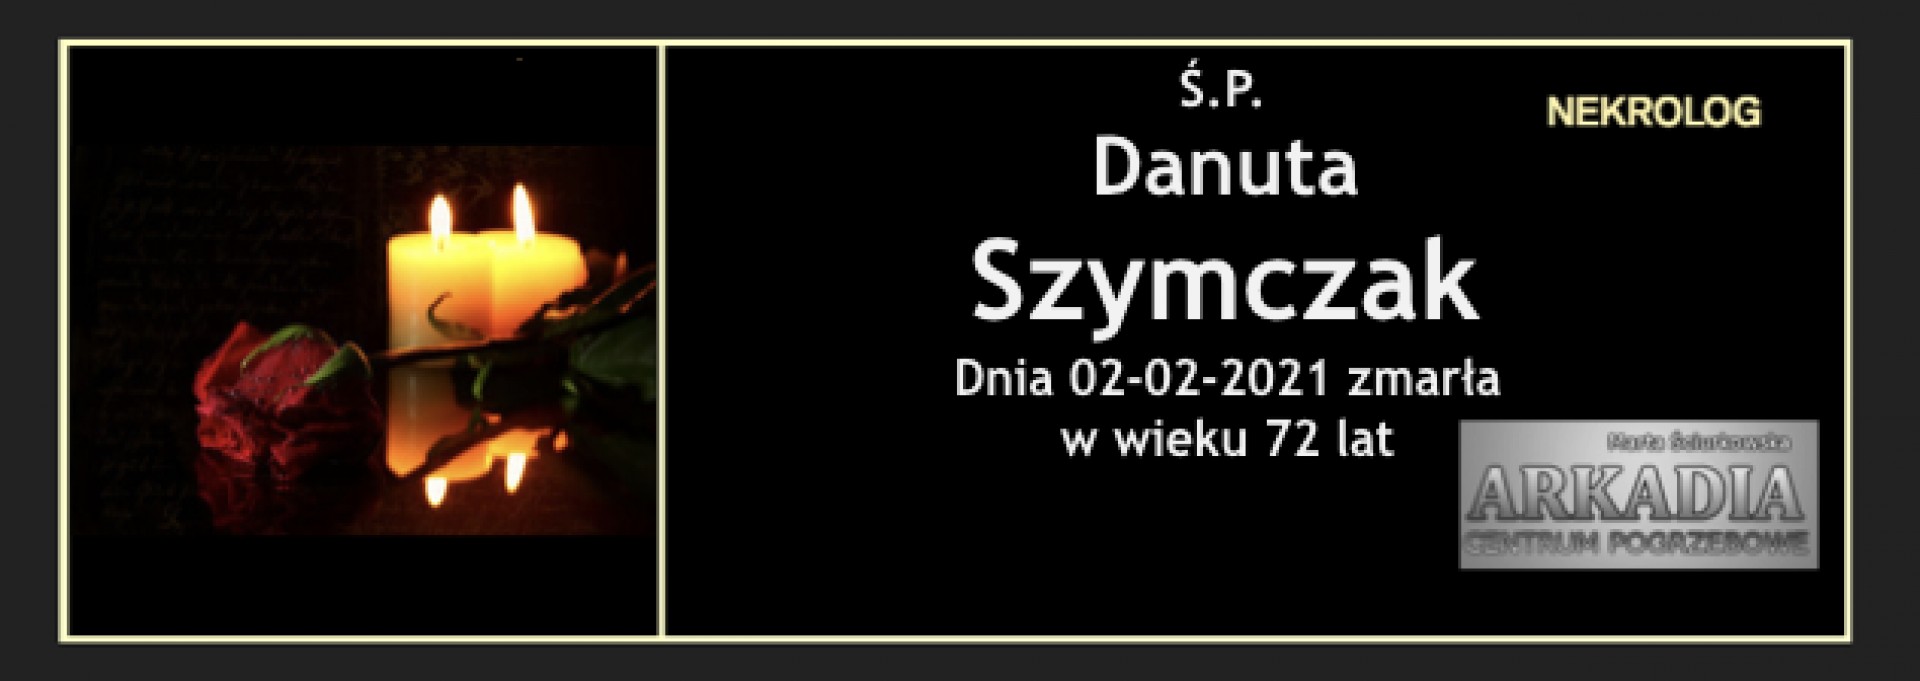 Ś.P. Danuta Szymczak